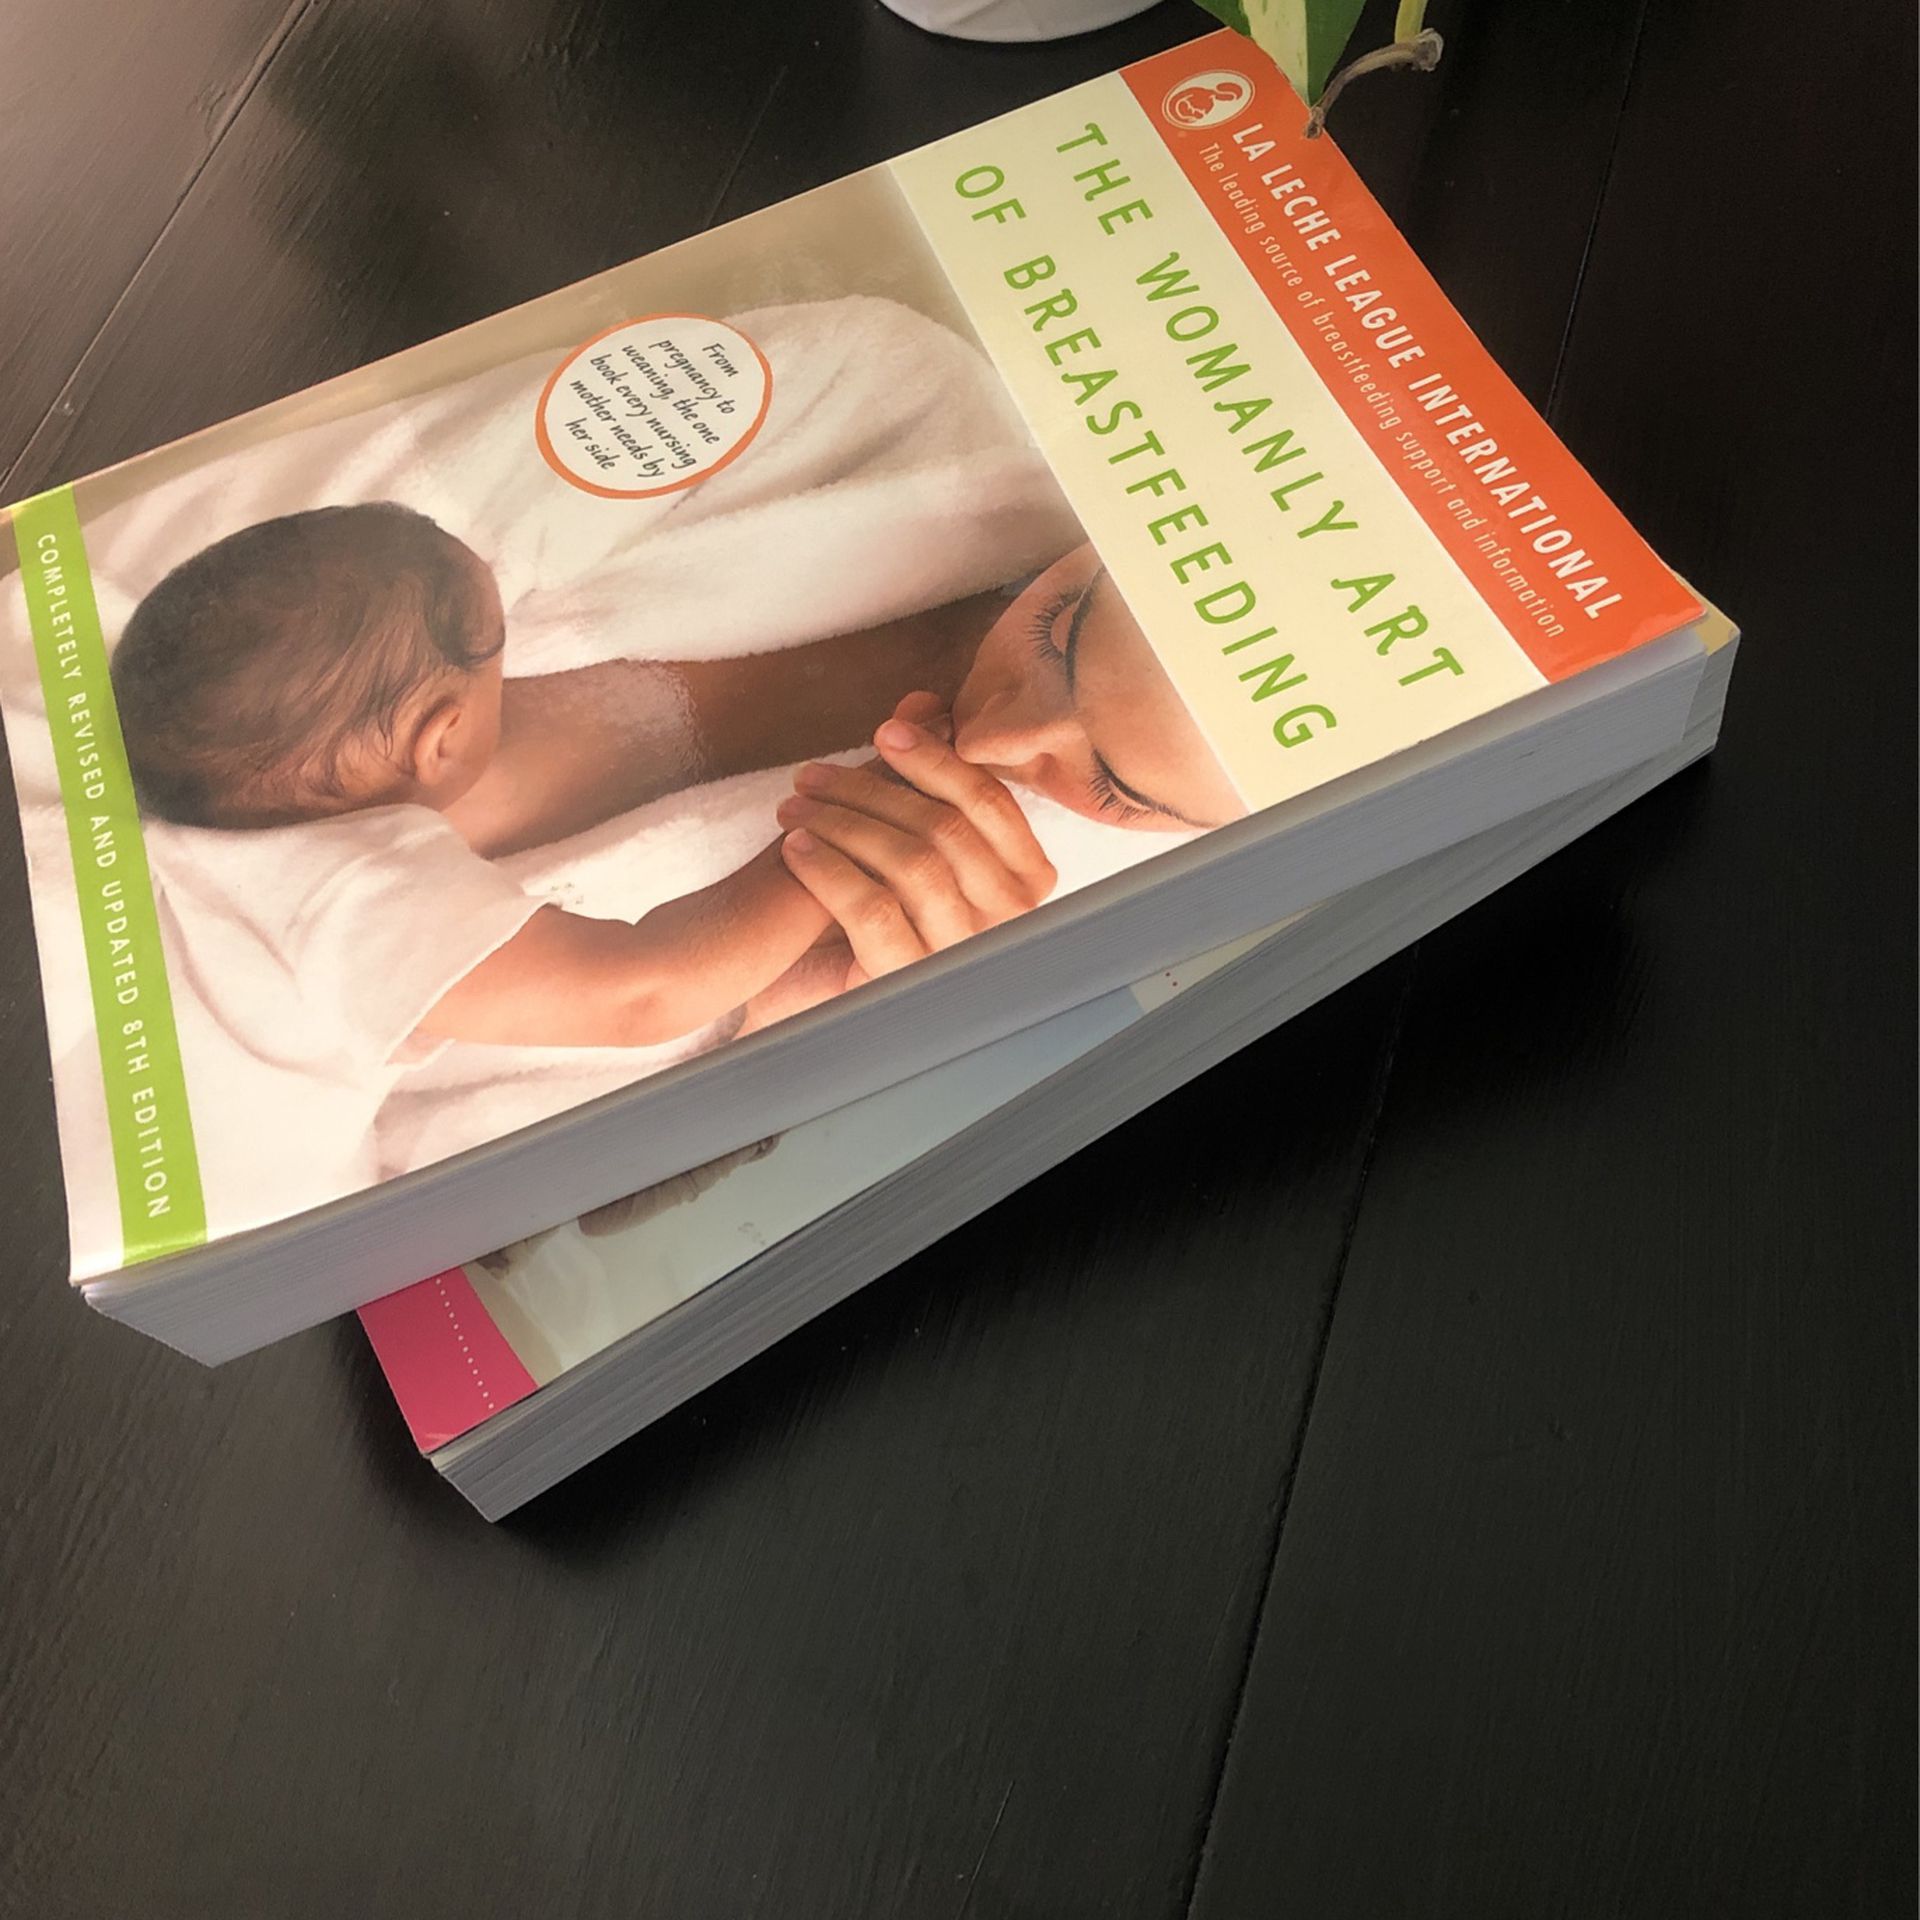 Maternity & Nursing Guide Books